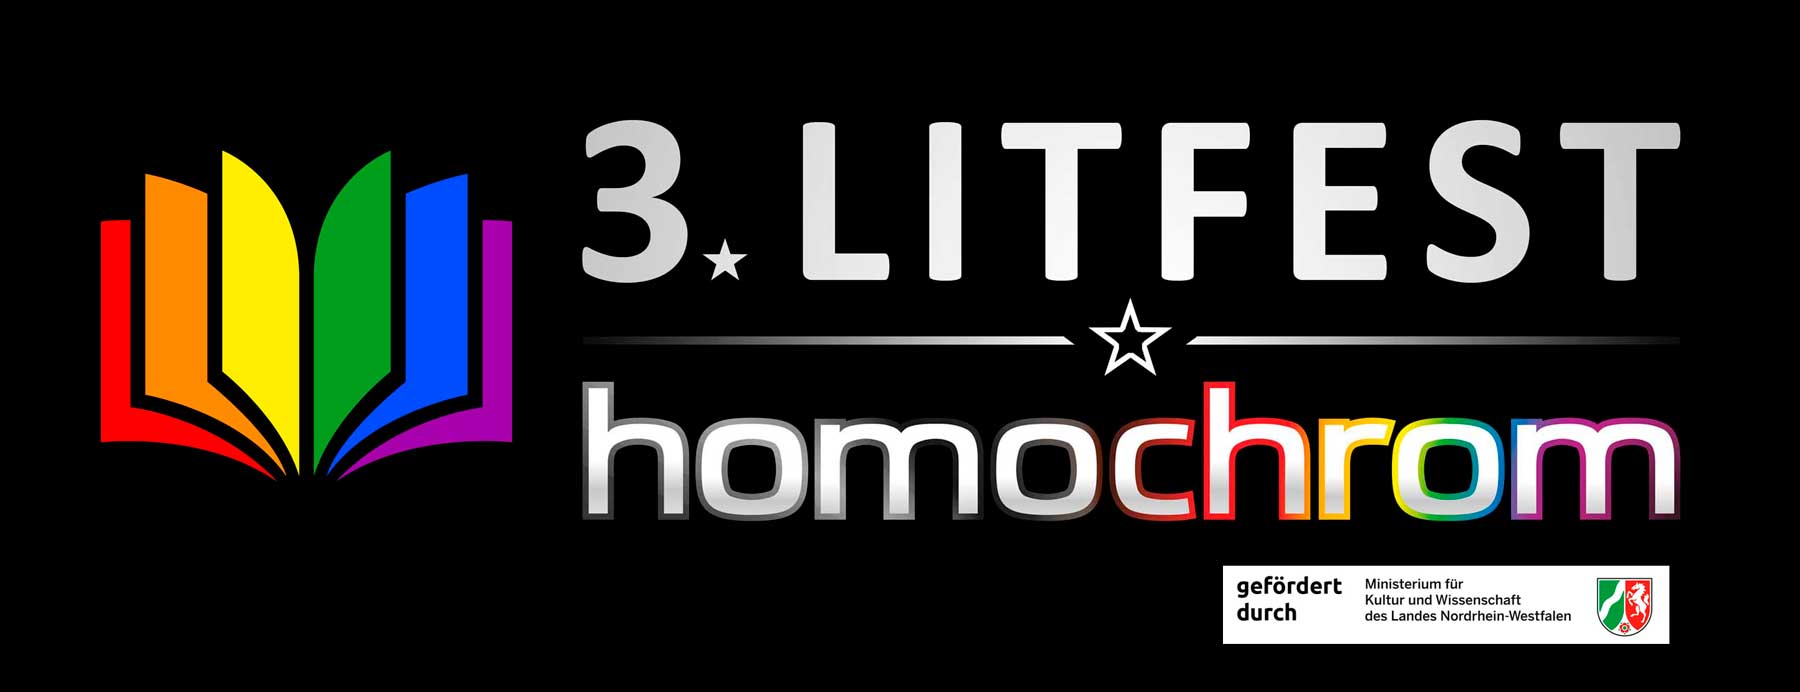 3. Litfest homochrom